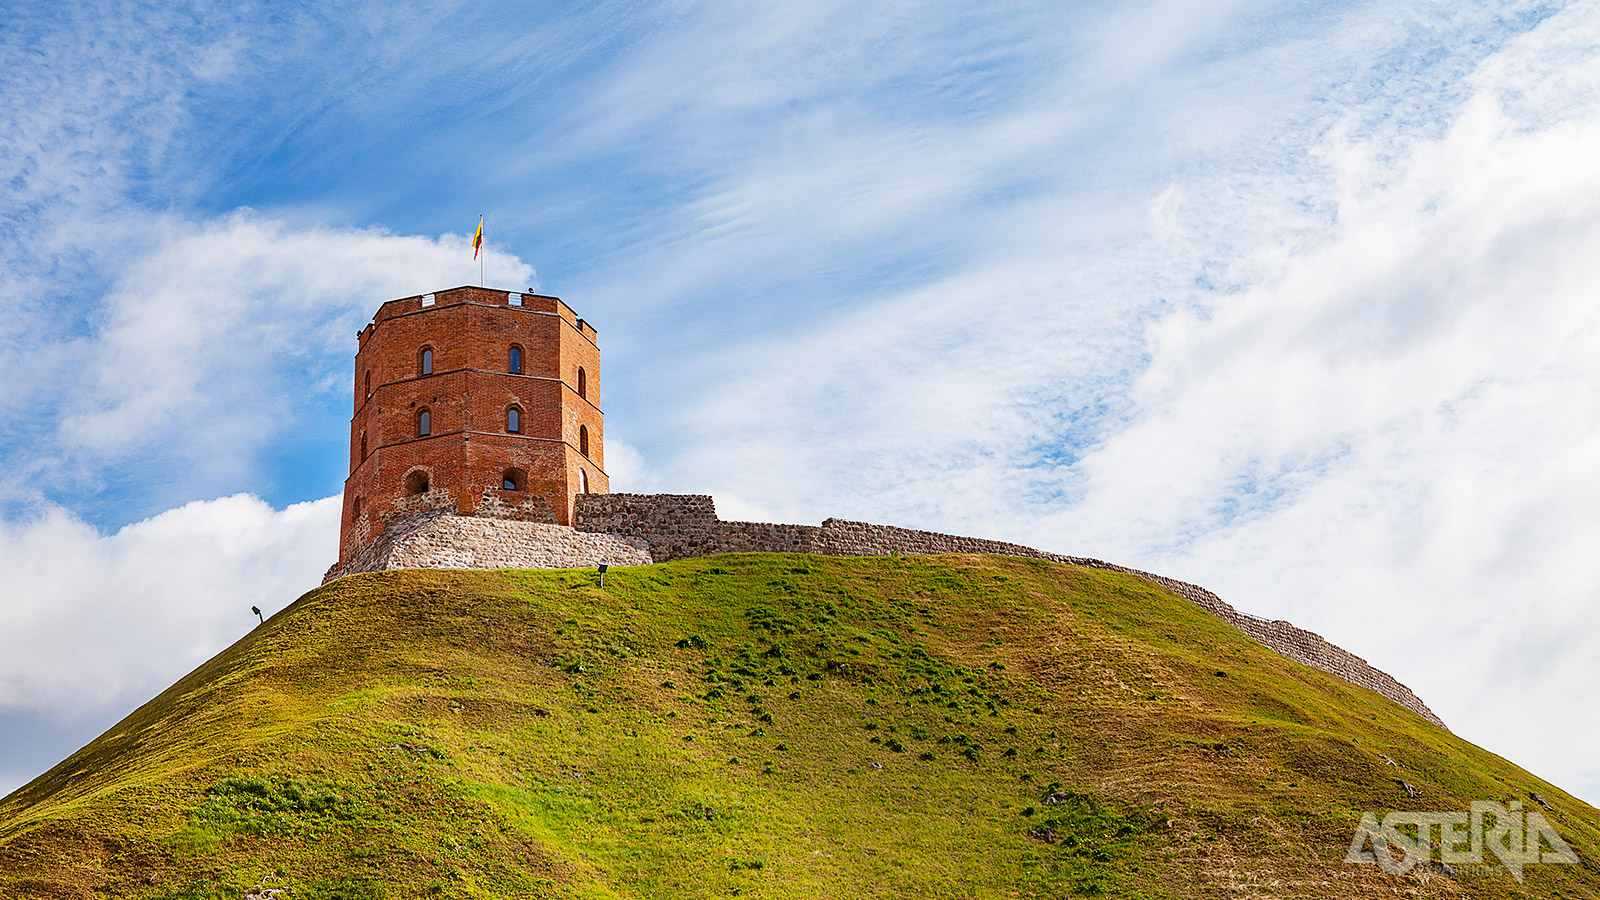 Een ander indrukwekkend bouwwerk in Vilnius is de 48m hoge Gediminas-toren, tegenwoordig een historisch museum